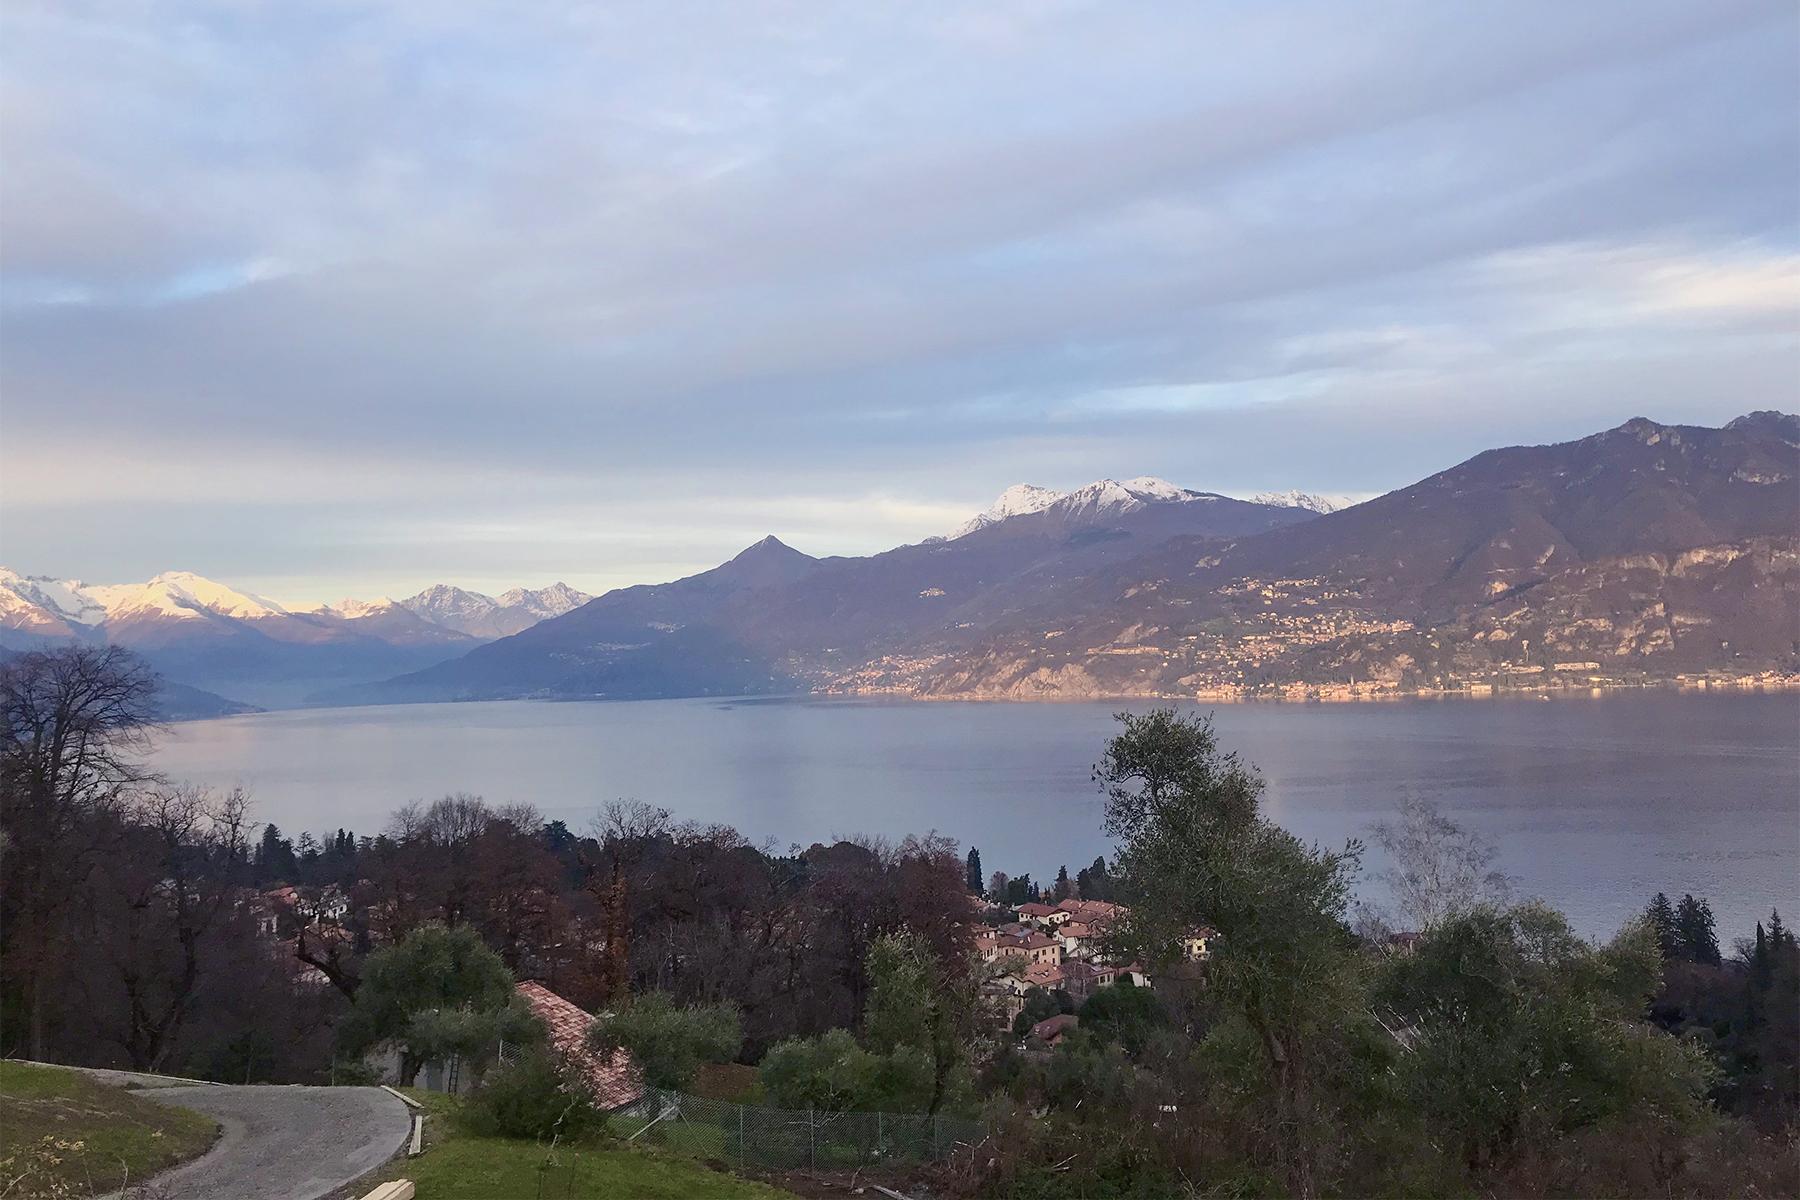 Villa in stile hollywoodiano con vista sul lago di Como da una posizione panoramica e dominante - 10